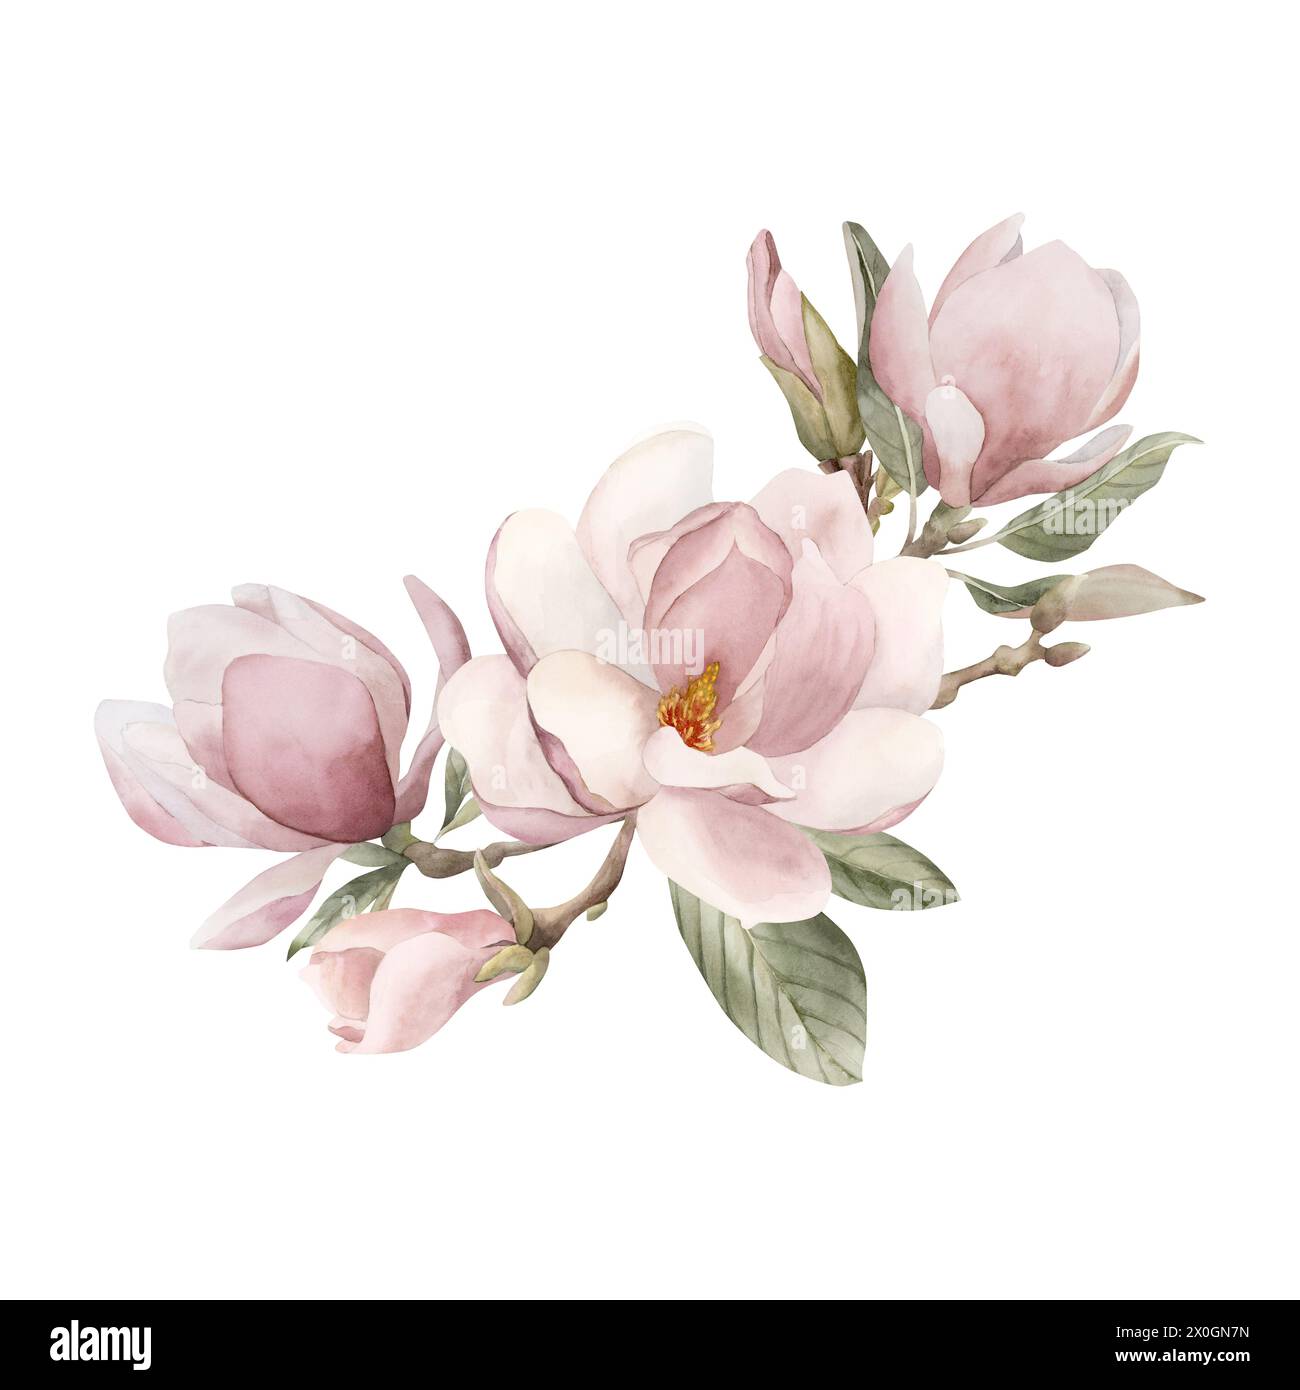 Composizione di fiori, gemme, rametti e foglie di magnolia rosa chiaro. Illustrazione ad acquerello floreale dipinta a mano isolata su sfondo bianco. Primavera Foto Stock